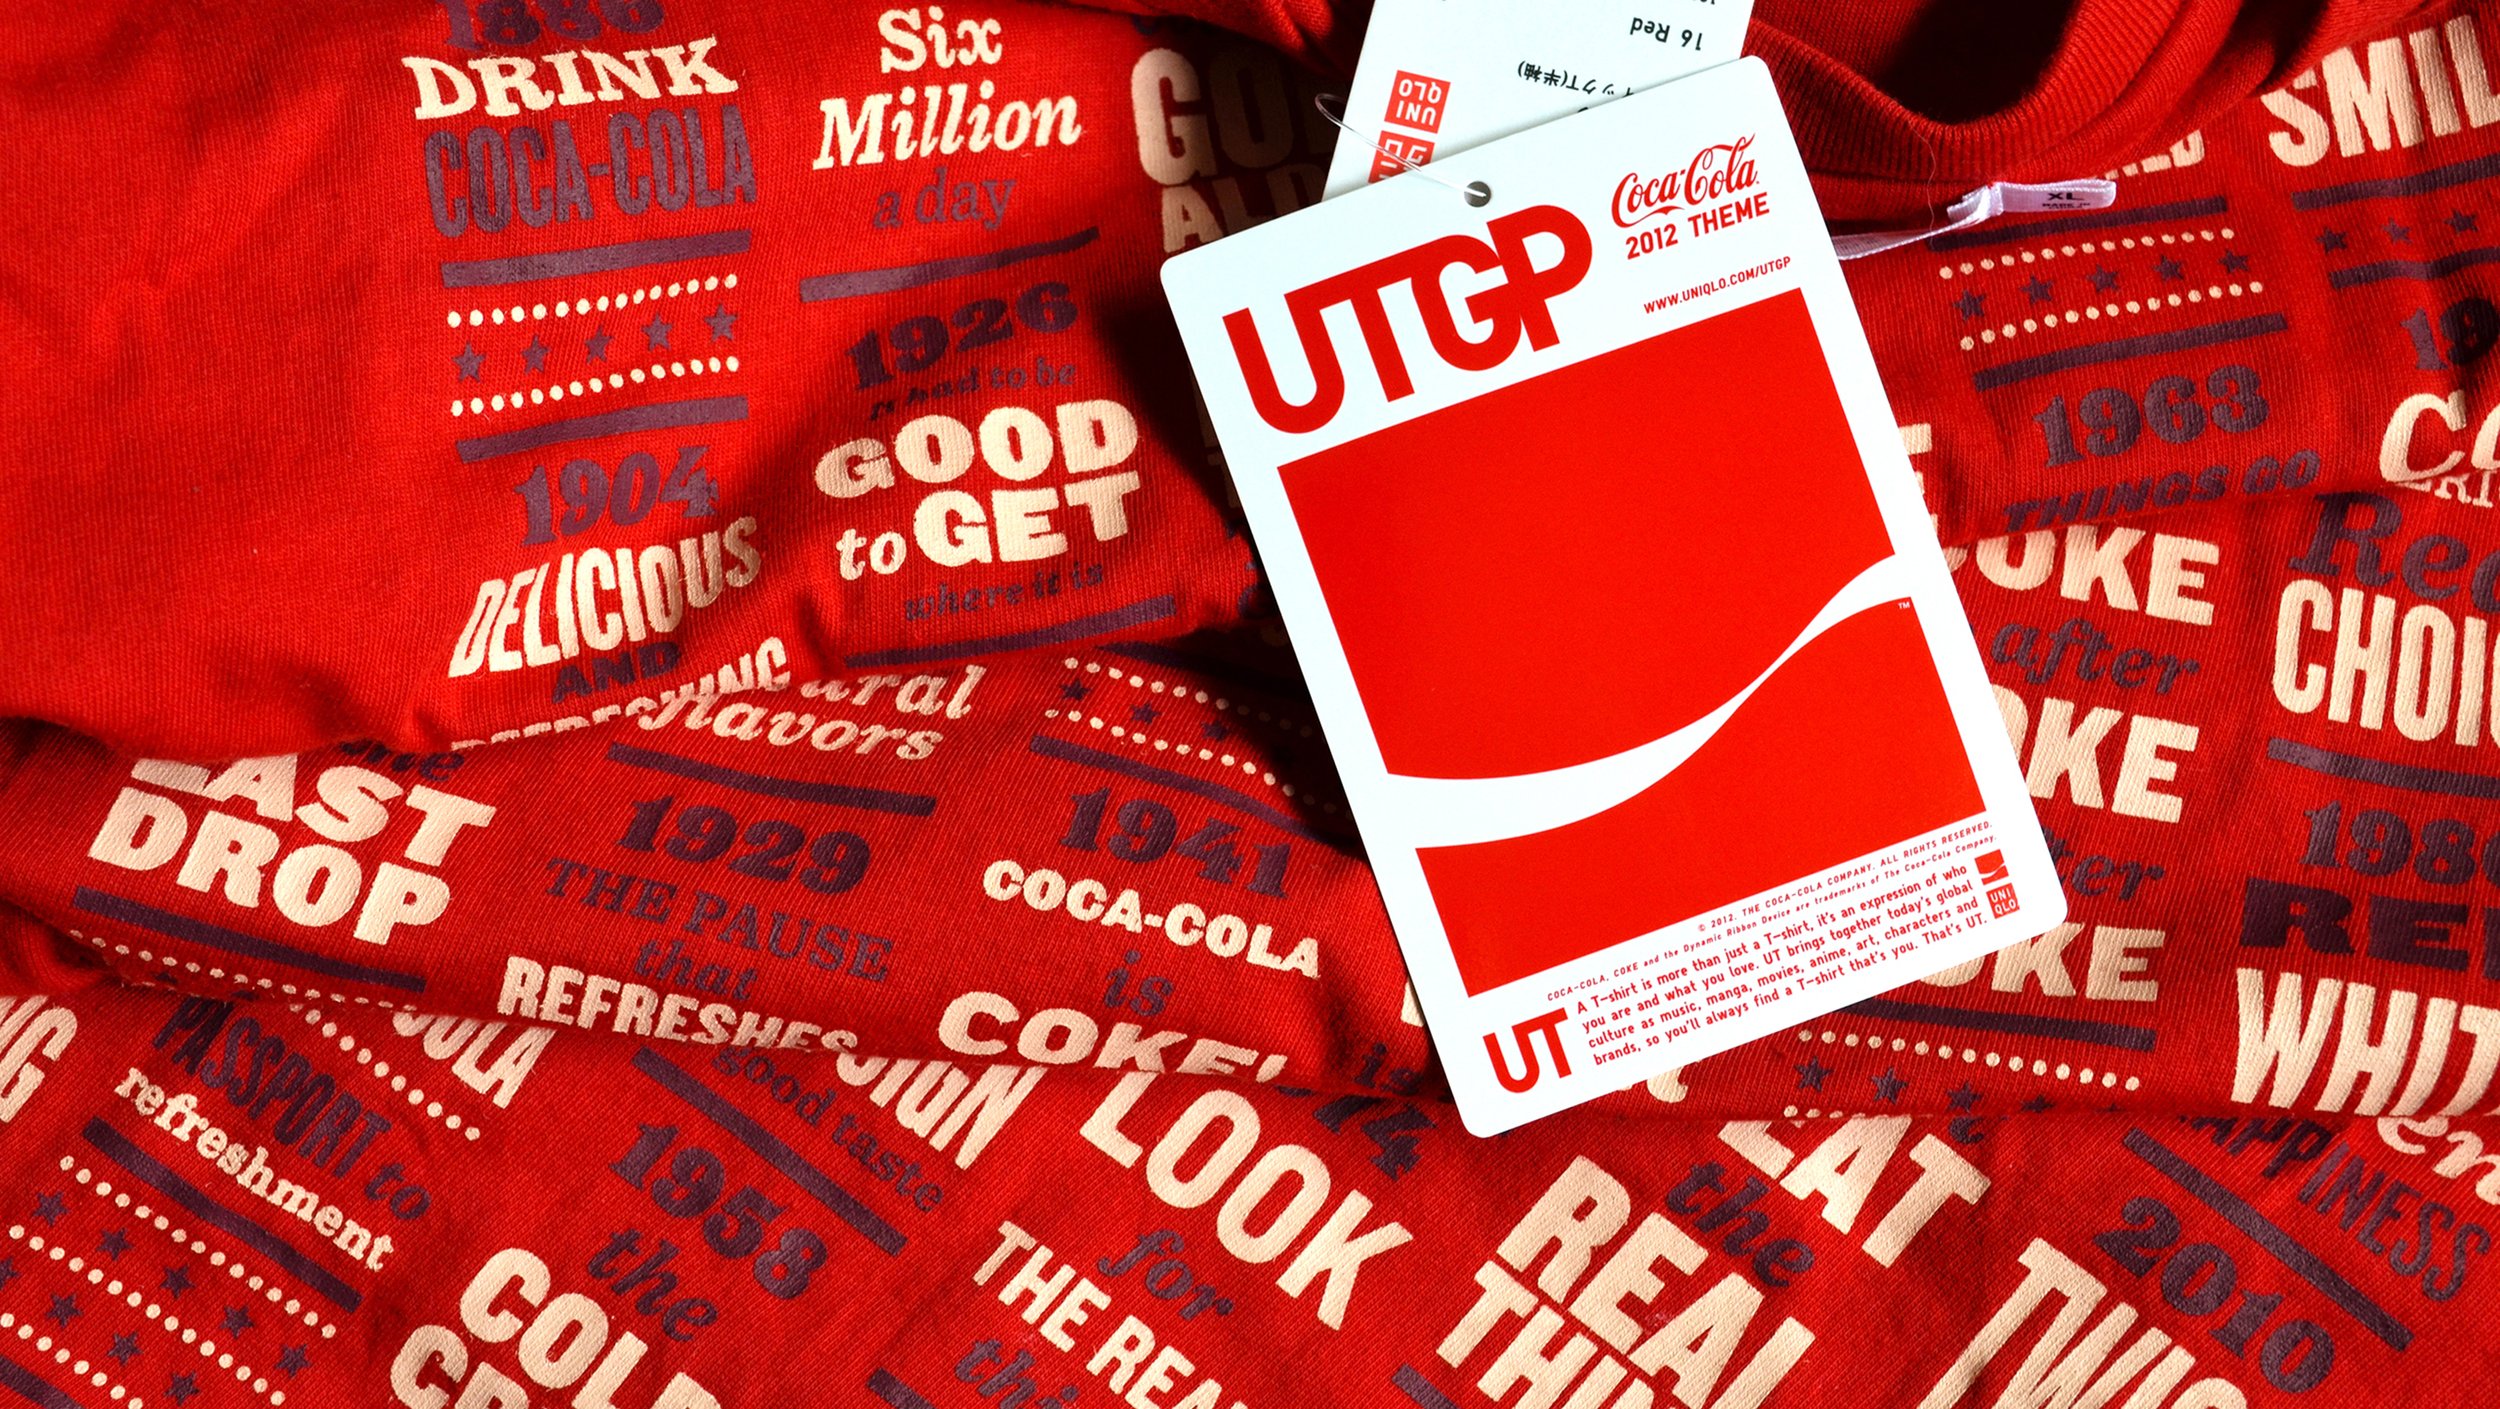   UTGP 2012 |  T-shirt Design Contest | Uniqlo x Coca-Cola 